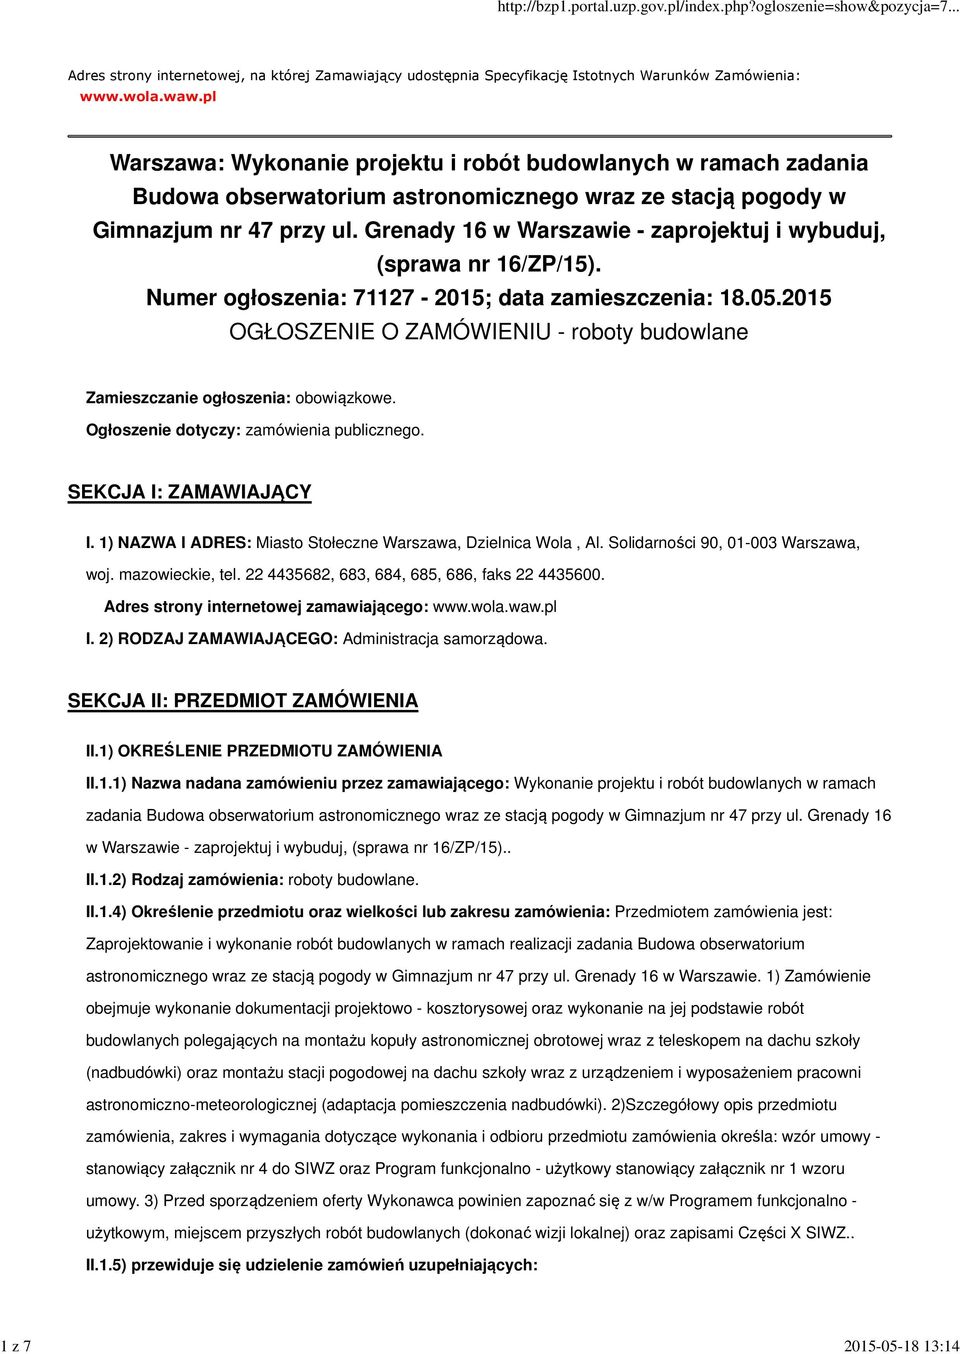 Grenady 16 w Warszawie - zaprojektuj i wybuduj, (sprawa nr 16/ZP/15). Numer ogłoszenia: 71127-2015; data zamieszczenia: 18.05.